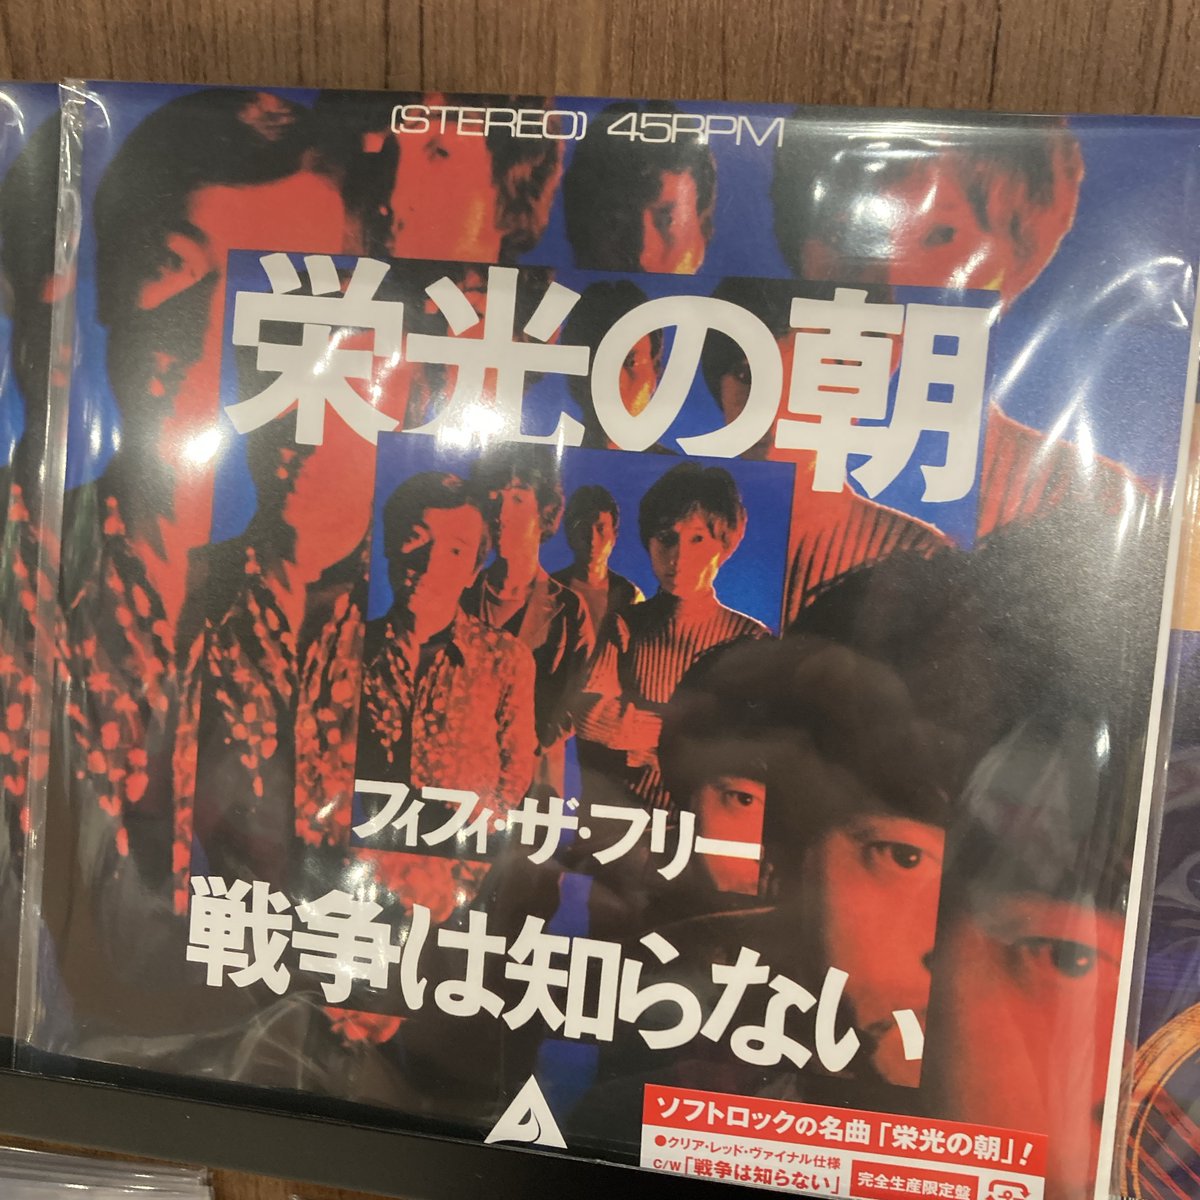 【入荷情報】
Fifi The Flea/栄光の朝(7'/MHKL90)
ソフトロックの名曲「栄光の朝」 7インチ・ヴァイナルで復刻！

hmv.co.jp/product/detail…
取り置きやお問合せはお気軽にどうぞ！
☎06-7661-0010
#Osaka #vinylshop #vinylrecords #recordstore #アナログ #レコード #Shinsaibashi